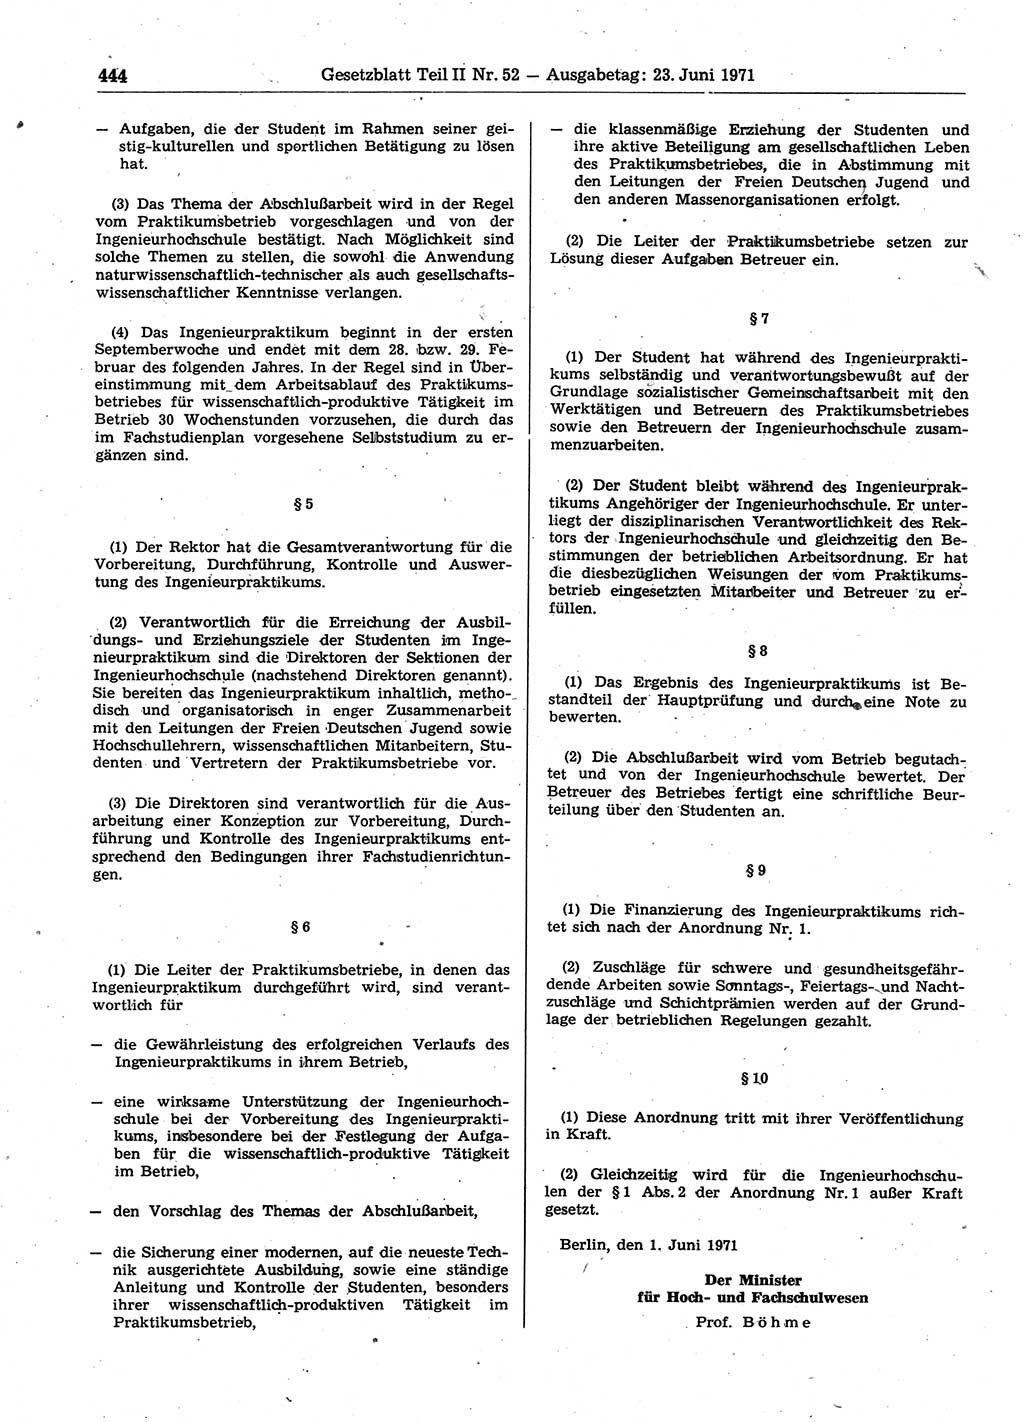 Gesetzblatt (GBl.) der Deutschen Demokratischen Republik (DDR) Teil ⅠⅠ 1971, Seite 444 (GBl. DDR ⅠⅠ 1971, S. 444)